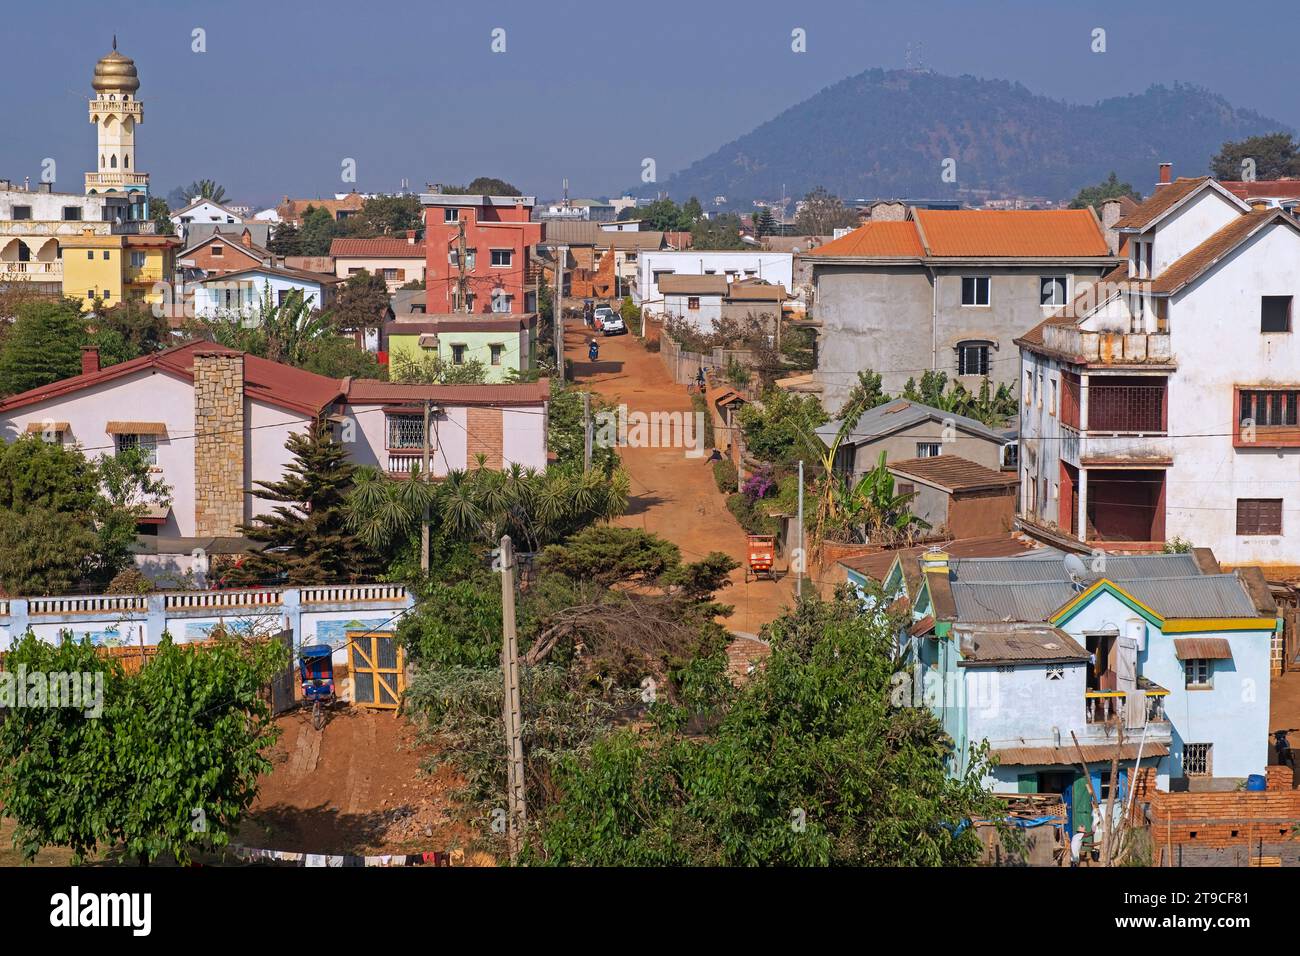 Vue sur la ville Antsirabe montrant des maisons, route non pavée et mosquée musulmane, région de Vakinankaratra, hauts plateaux centraux, Madagascar, Afrique Banque D'Images